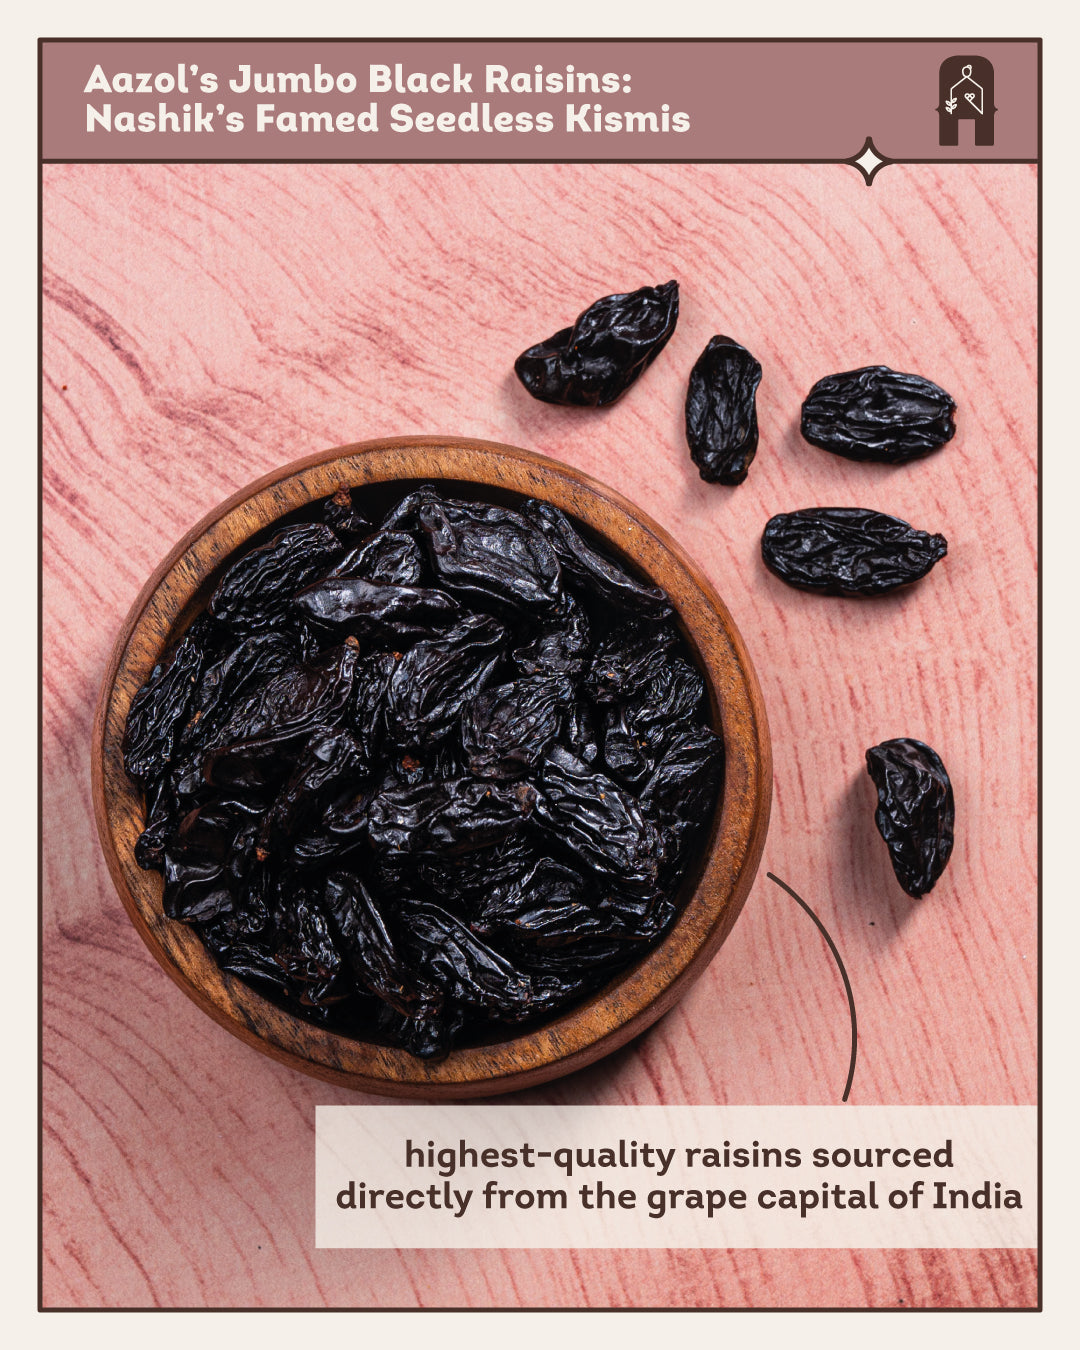 Aazol Jumbo Black Raisins: Nashik's Famed Seedless Kismis 250g